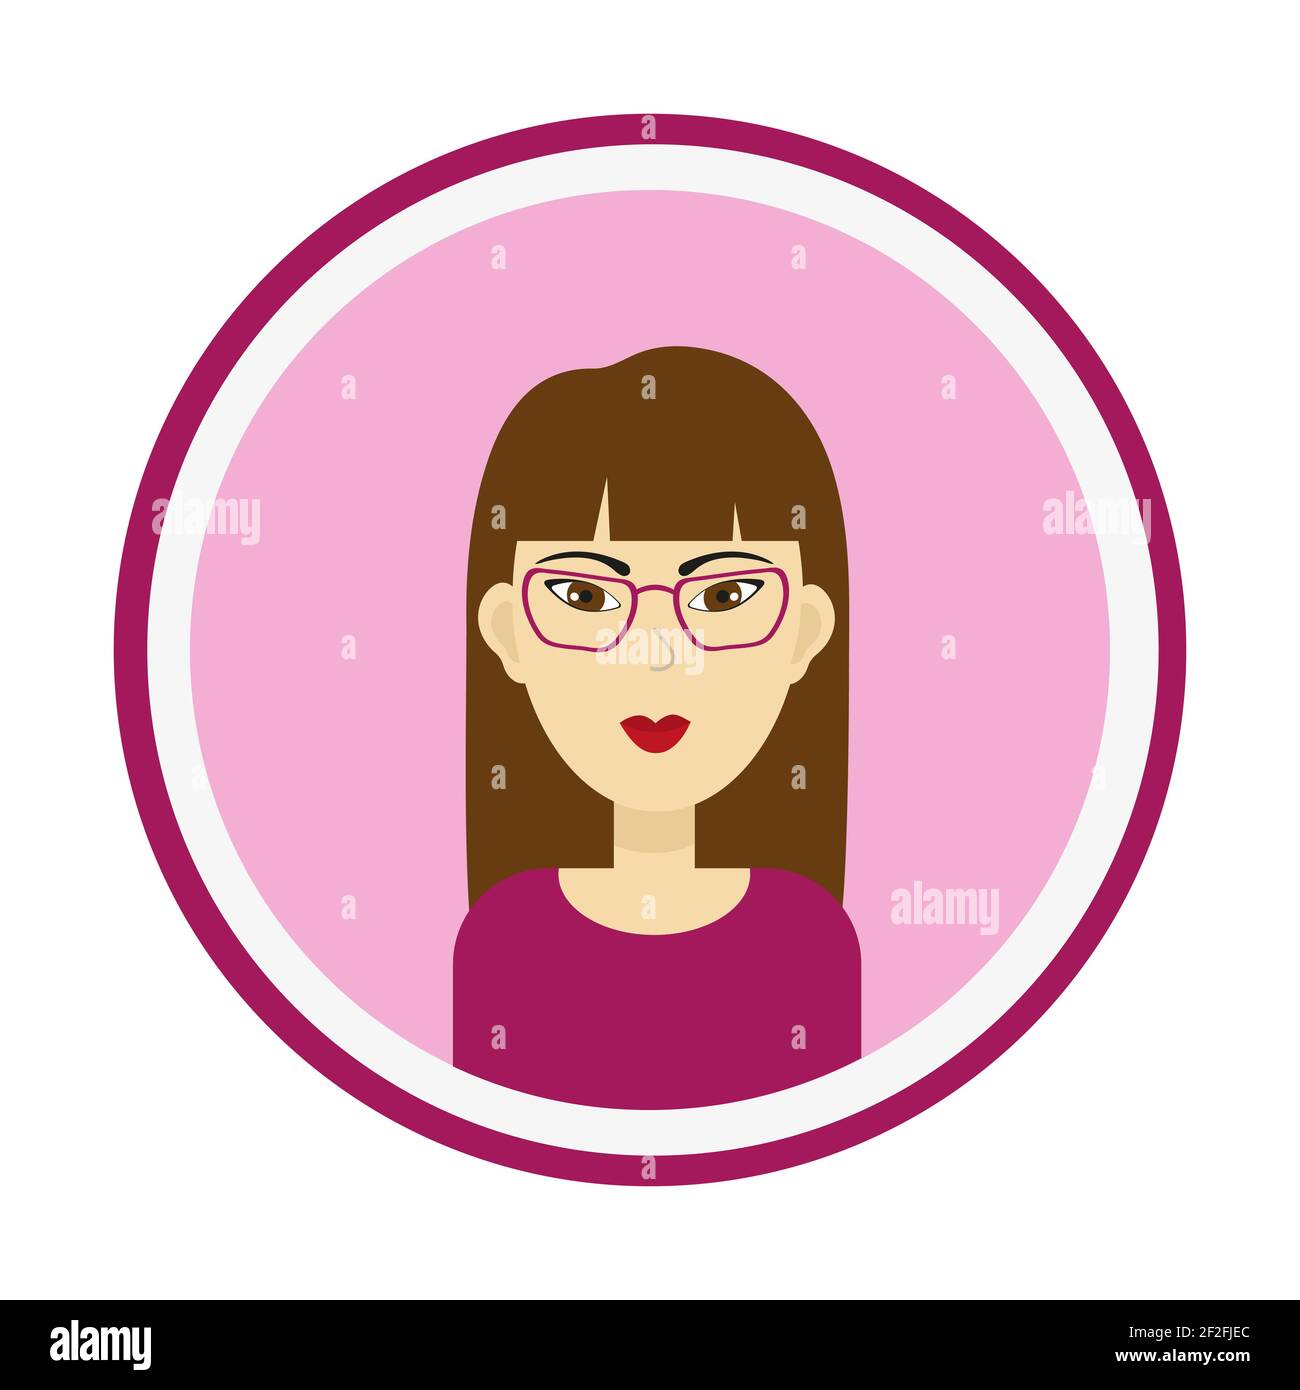 Avatar féminin. Portrait de femme mignon sur fond rose. Visage de fille avec cheveux longs bruns, yeux bruns et lunettes. Illustration vectorielle isolée. Illustration de Vecteur